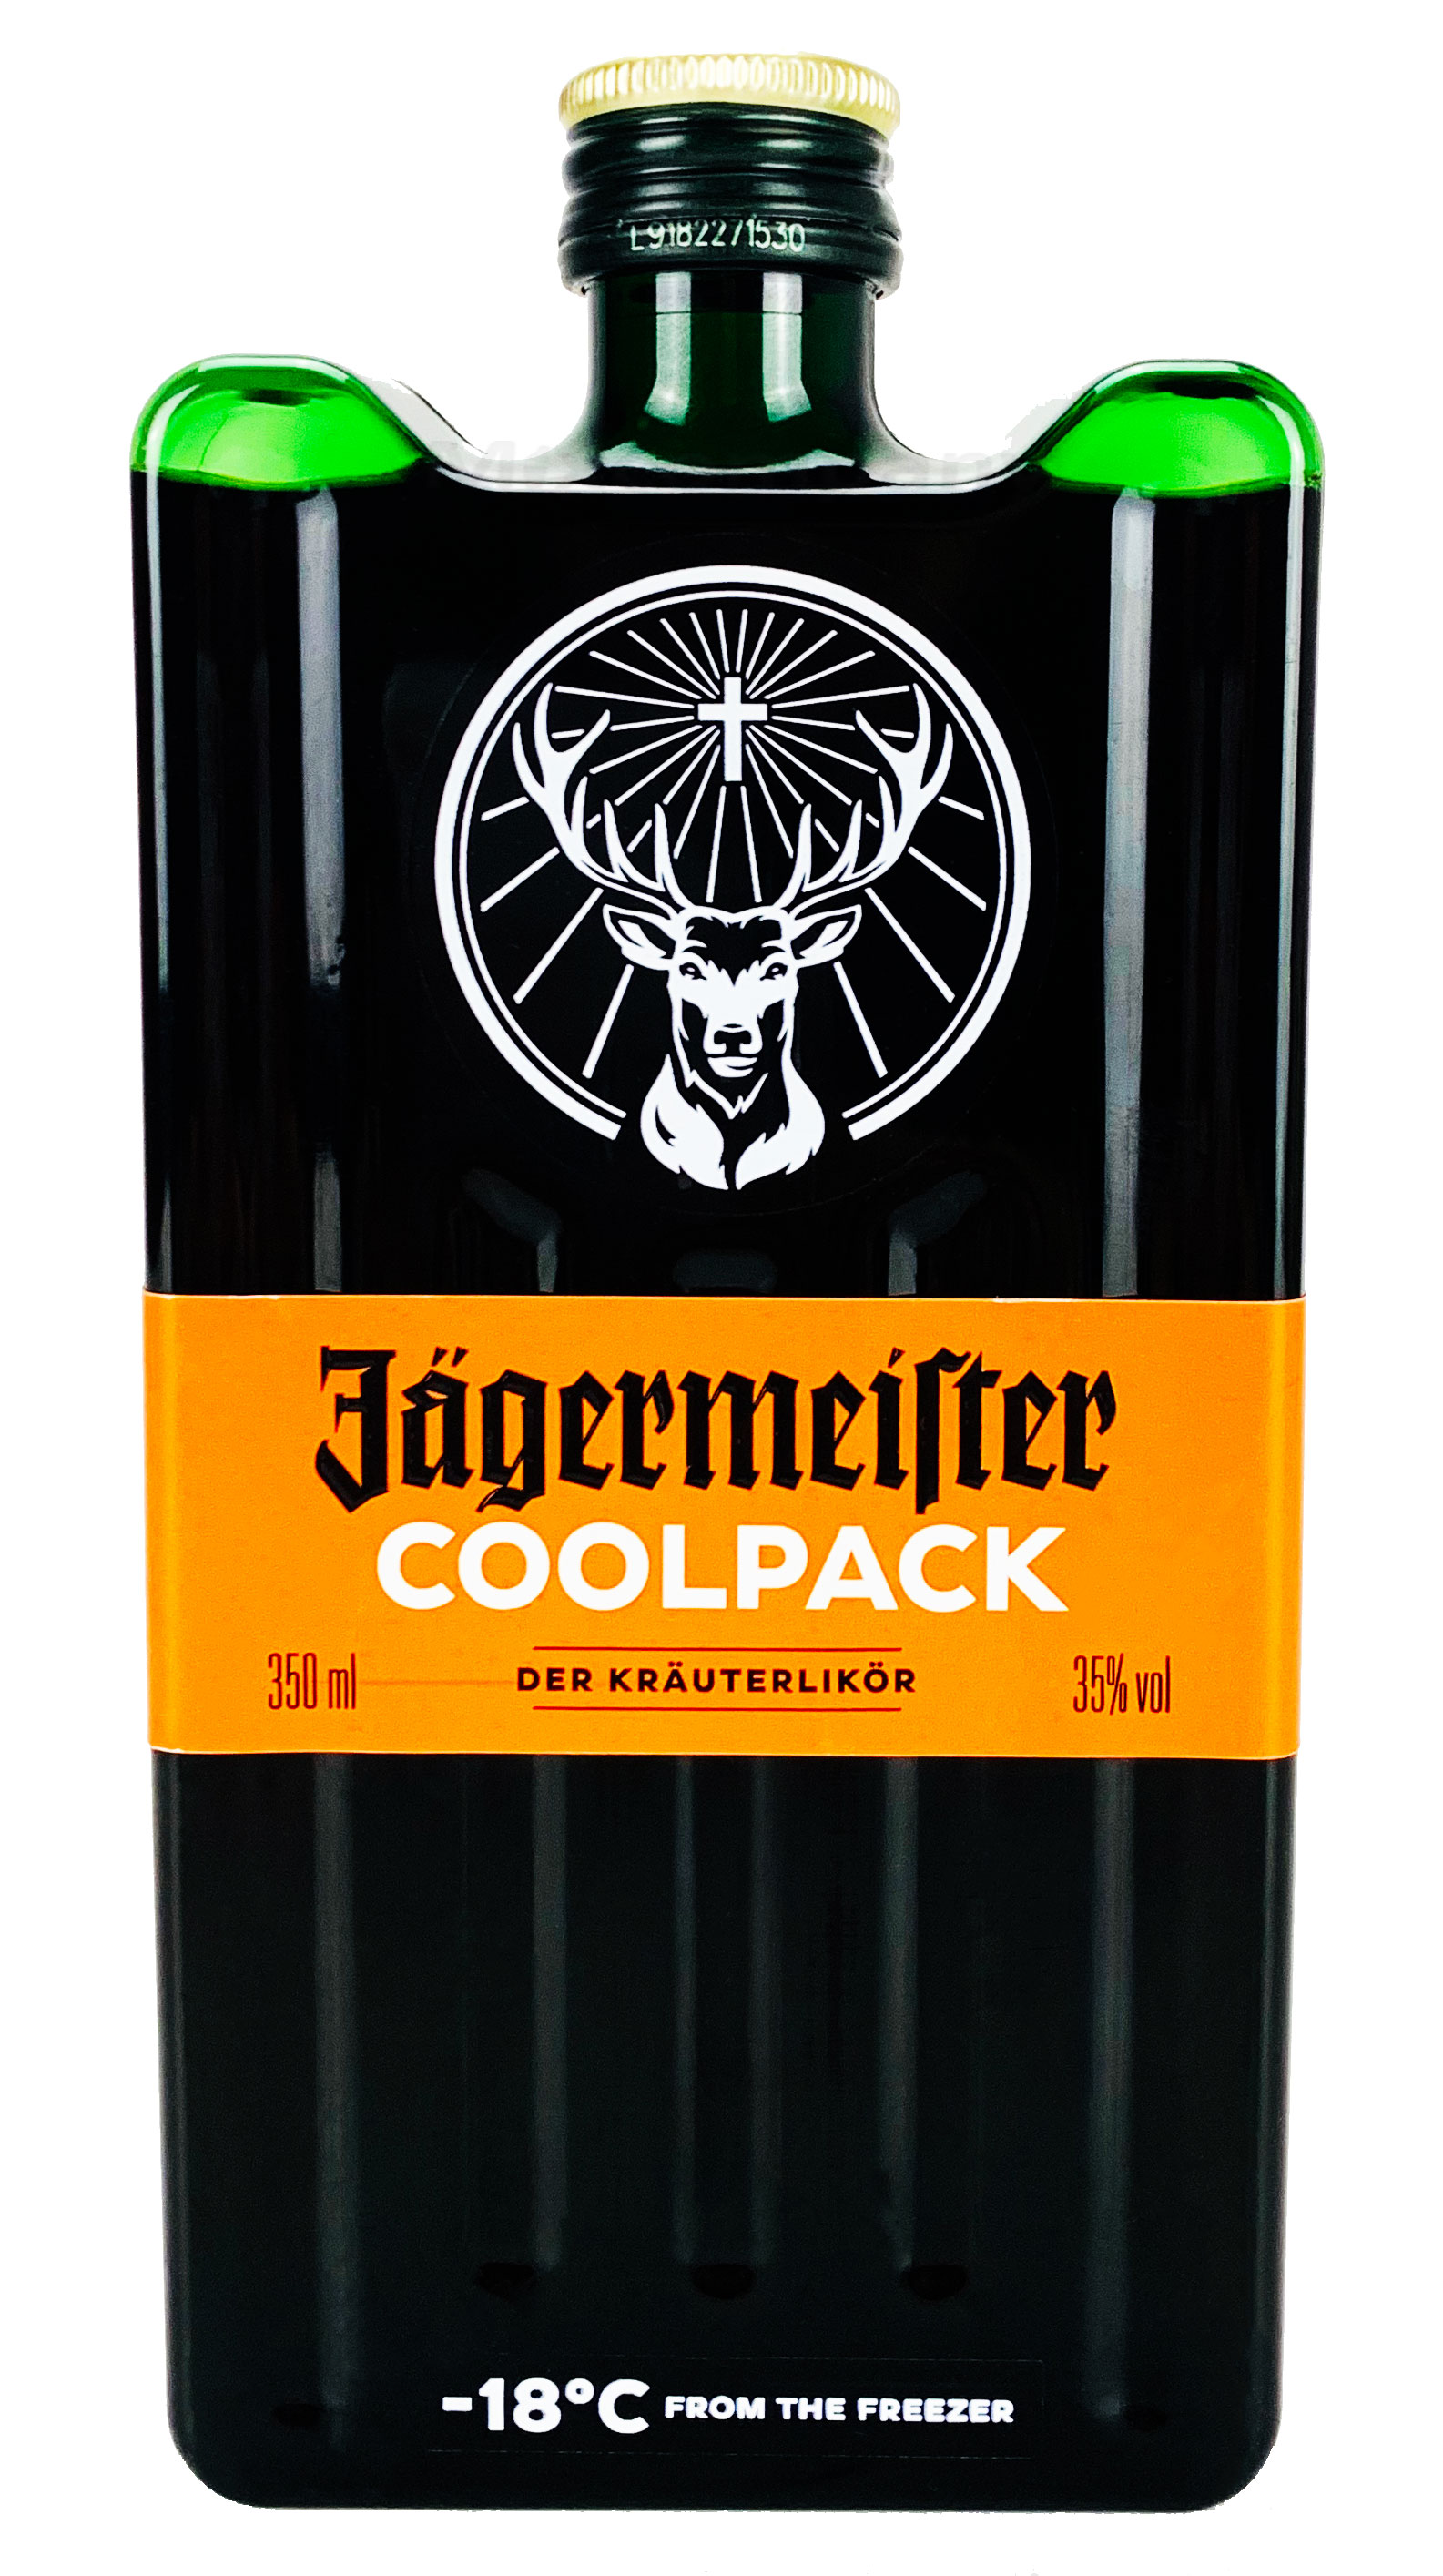 Jägermeister Coolpack 0,35l (35% Vol) Kräuterlikör Bar Drink - [Enthält Sulfite]